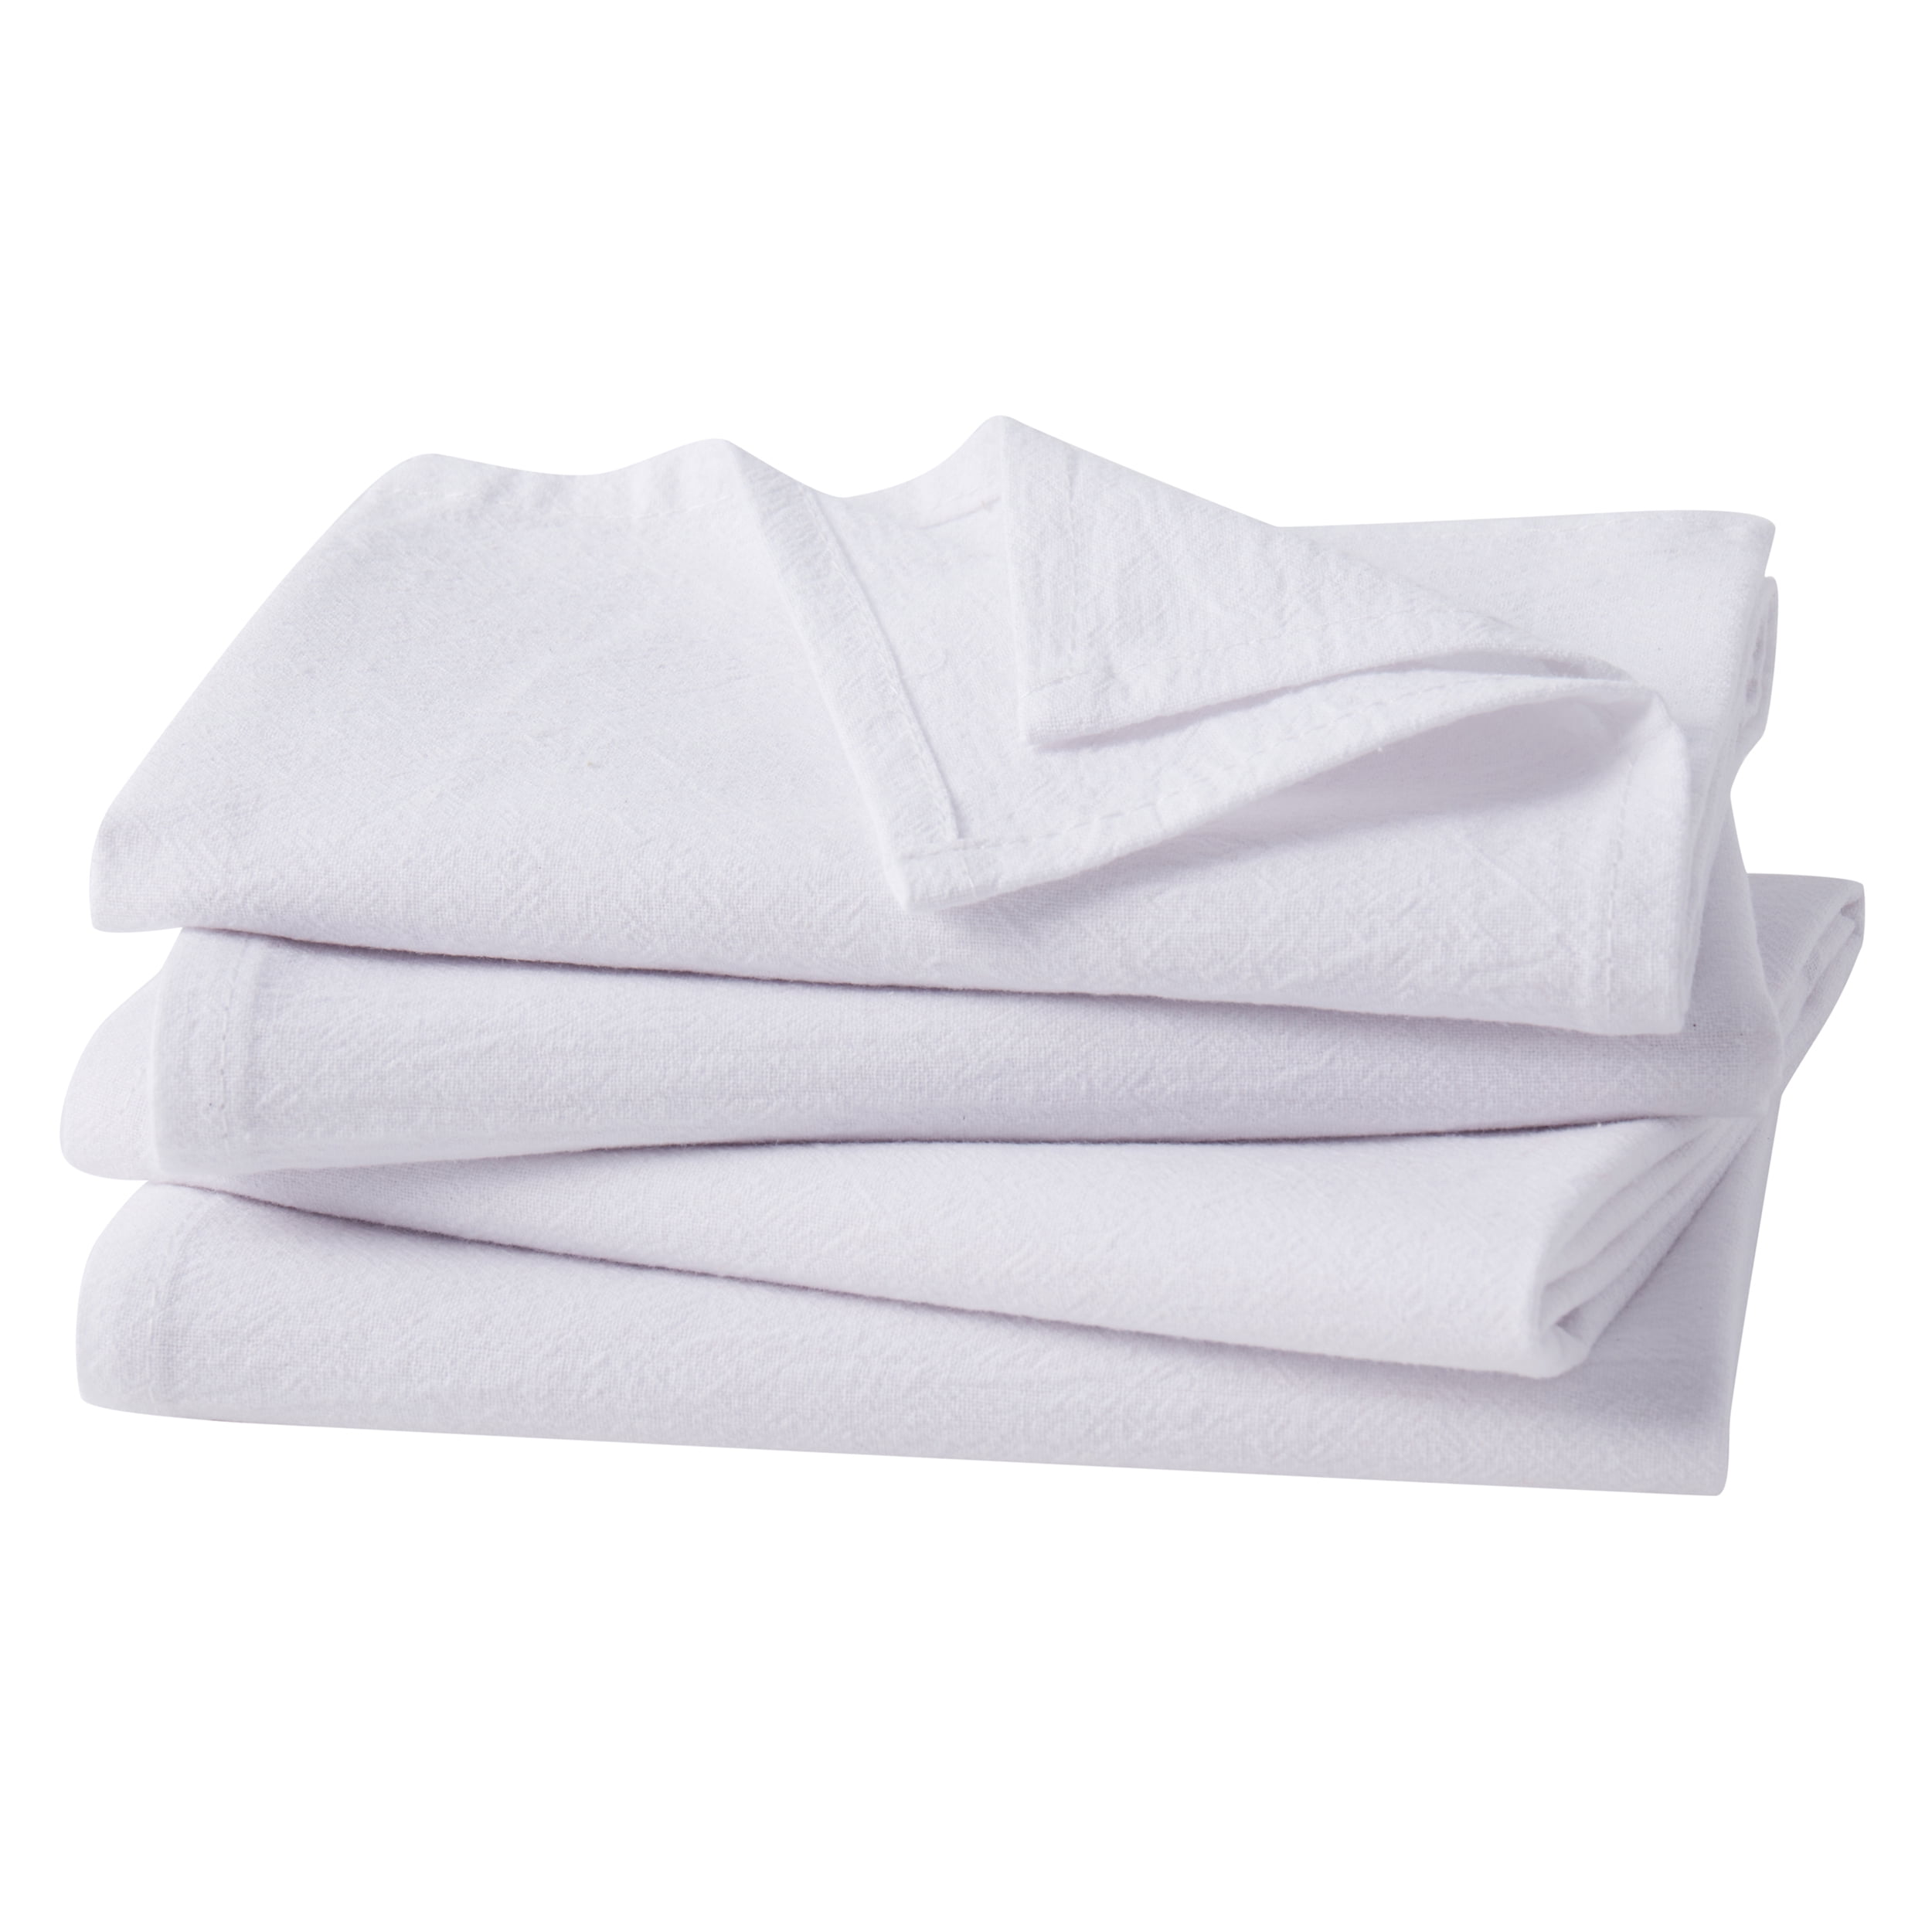 Kitchen Towel - 200 Natural white –